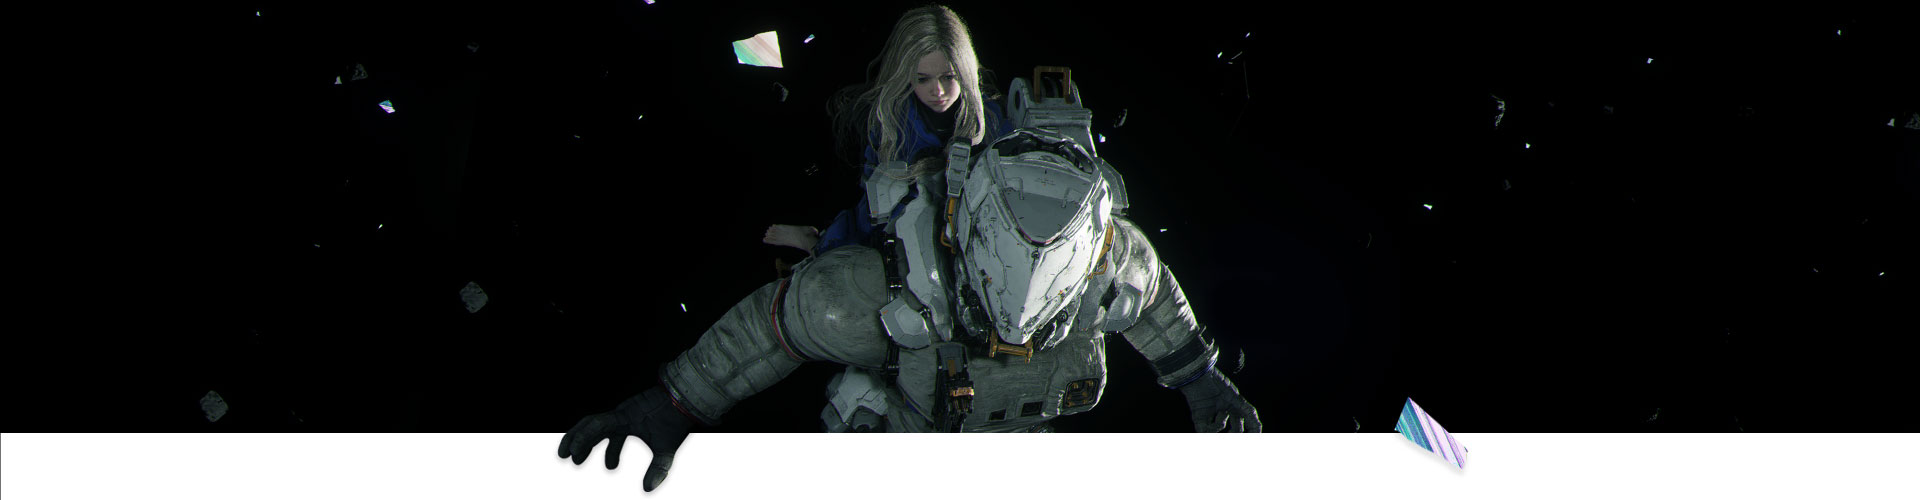 一位女孩騎在一名太空人身上穿越外太空